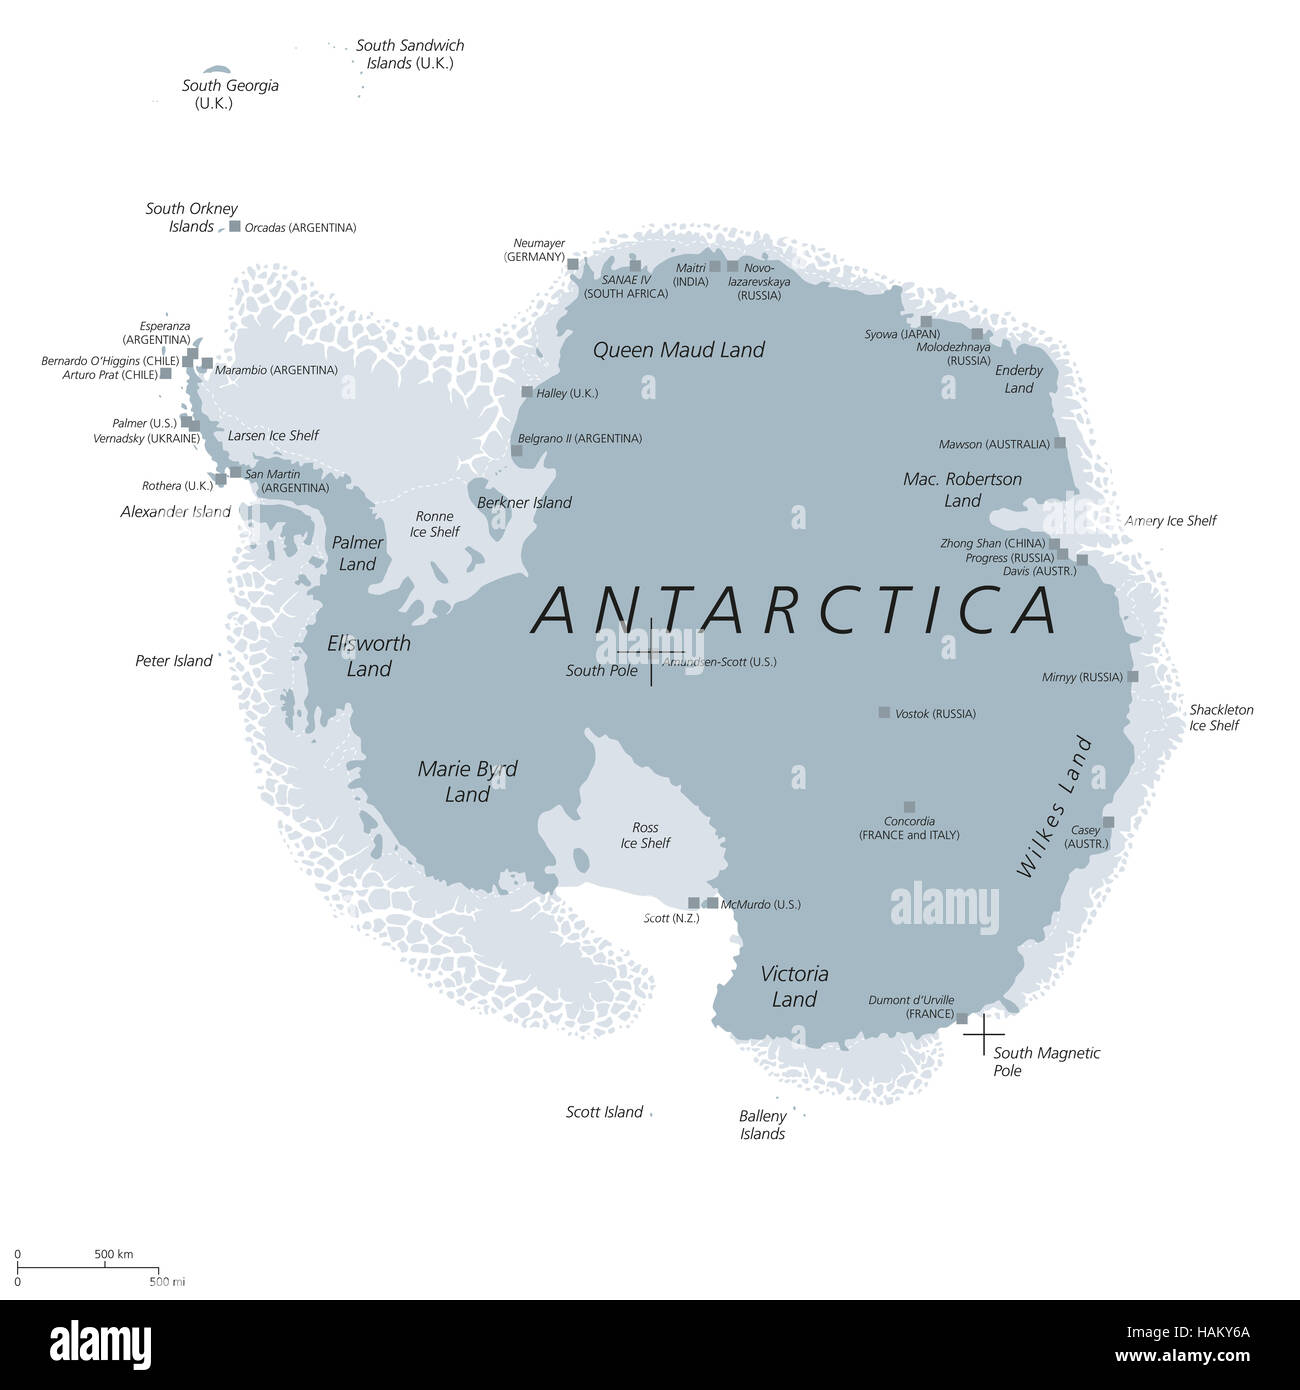 Antarktis Landkarte mit Geographic und magnetischen Südpol, wissenschaftliche Forschungsstationen und Eis Regale. Englisch beschriften. Stockfoto